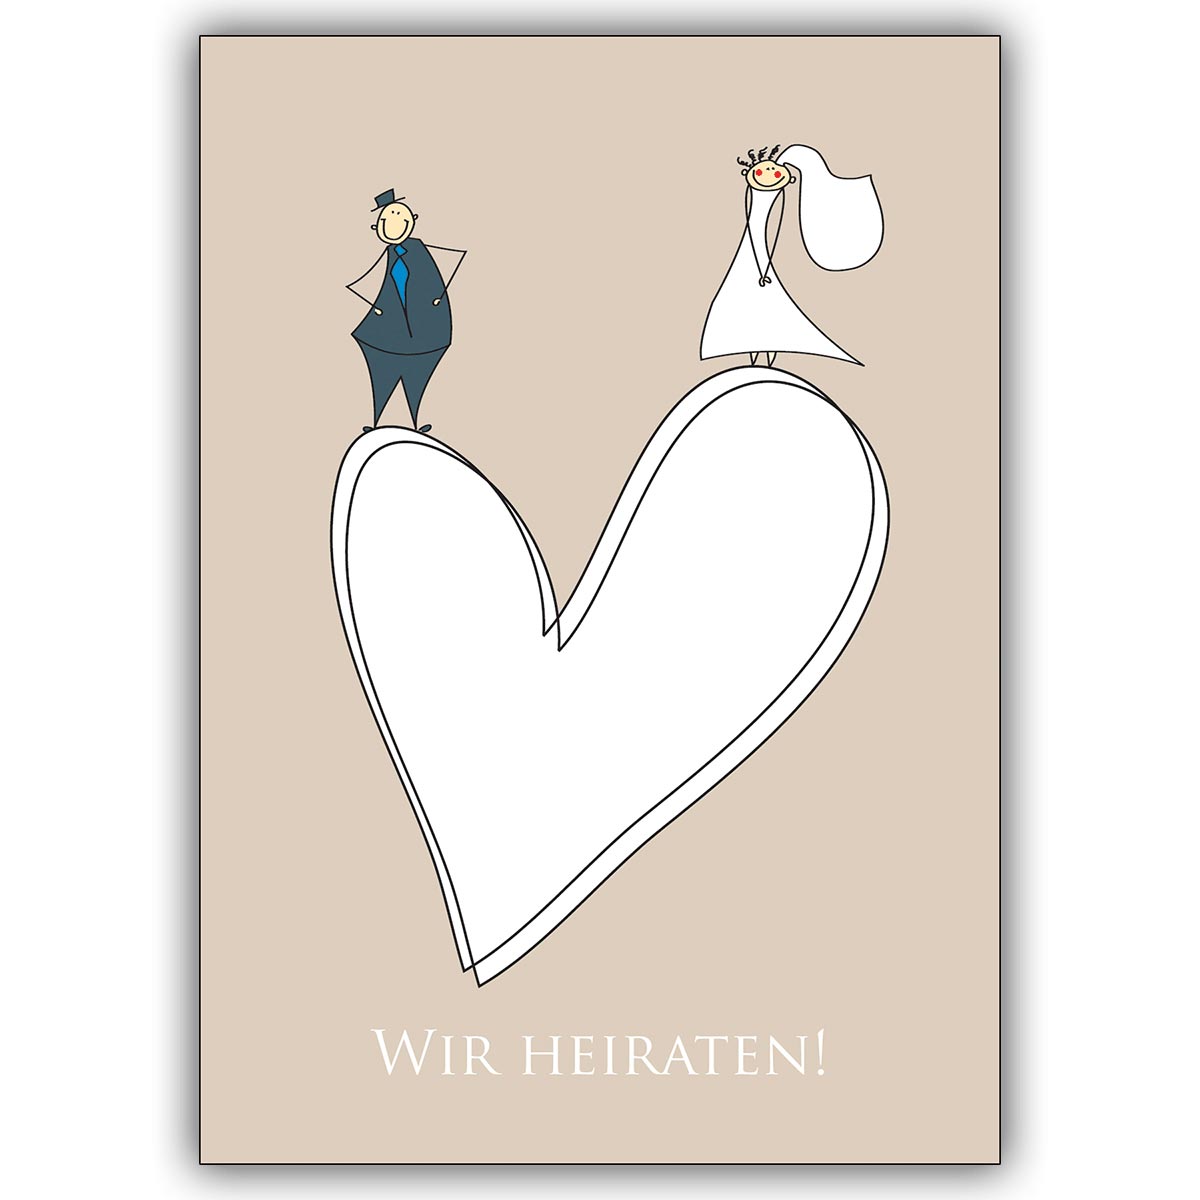 Süße Hochzeitsanzeige mit niedlichem Brautpaar auf Herz: Wir heiraten!